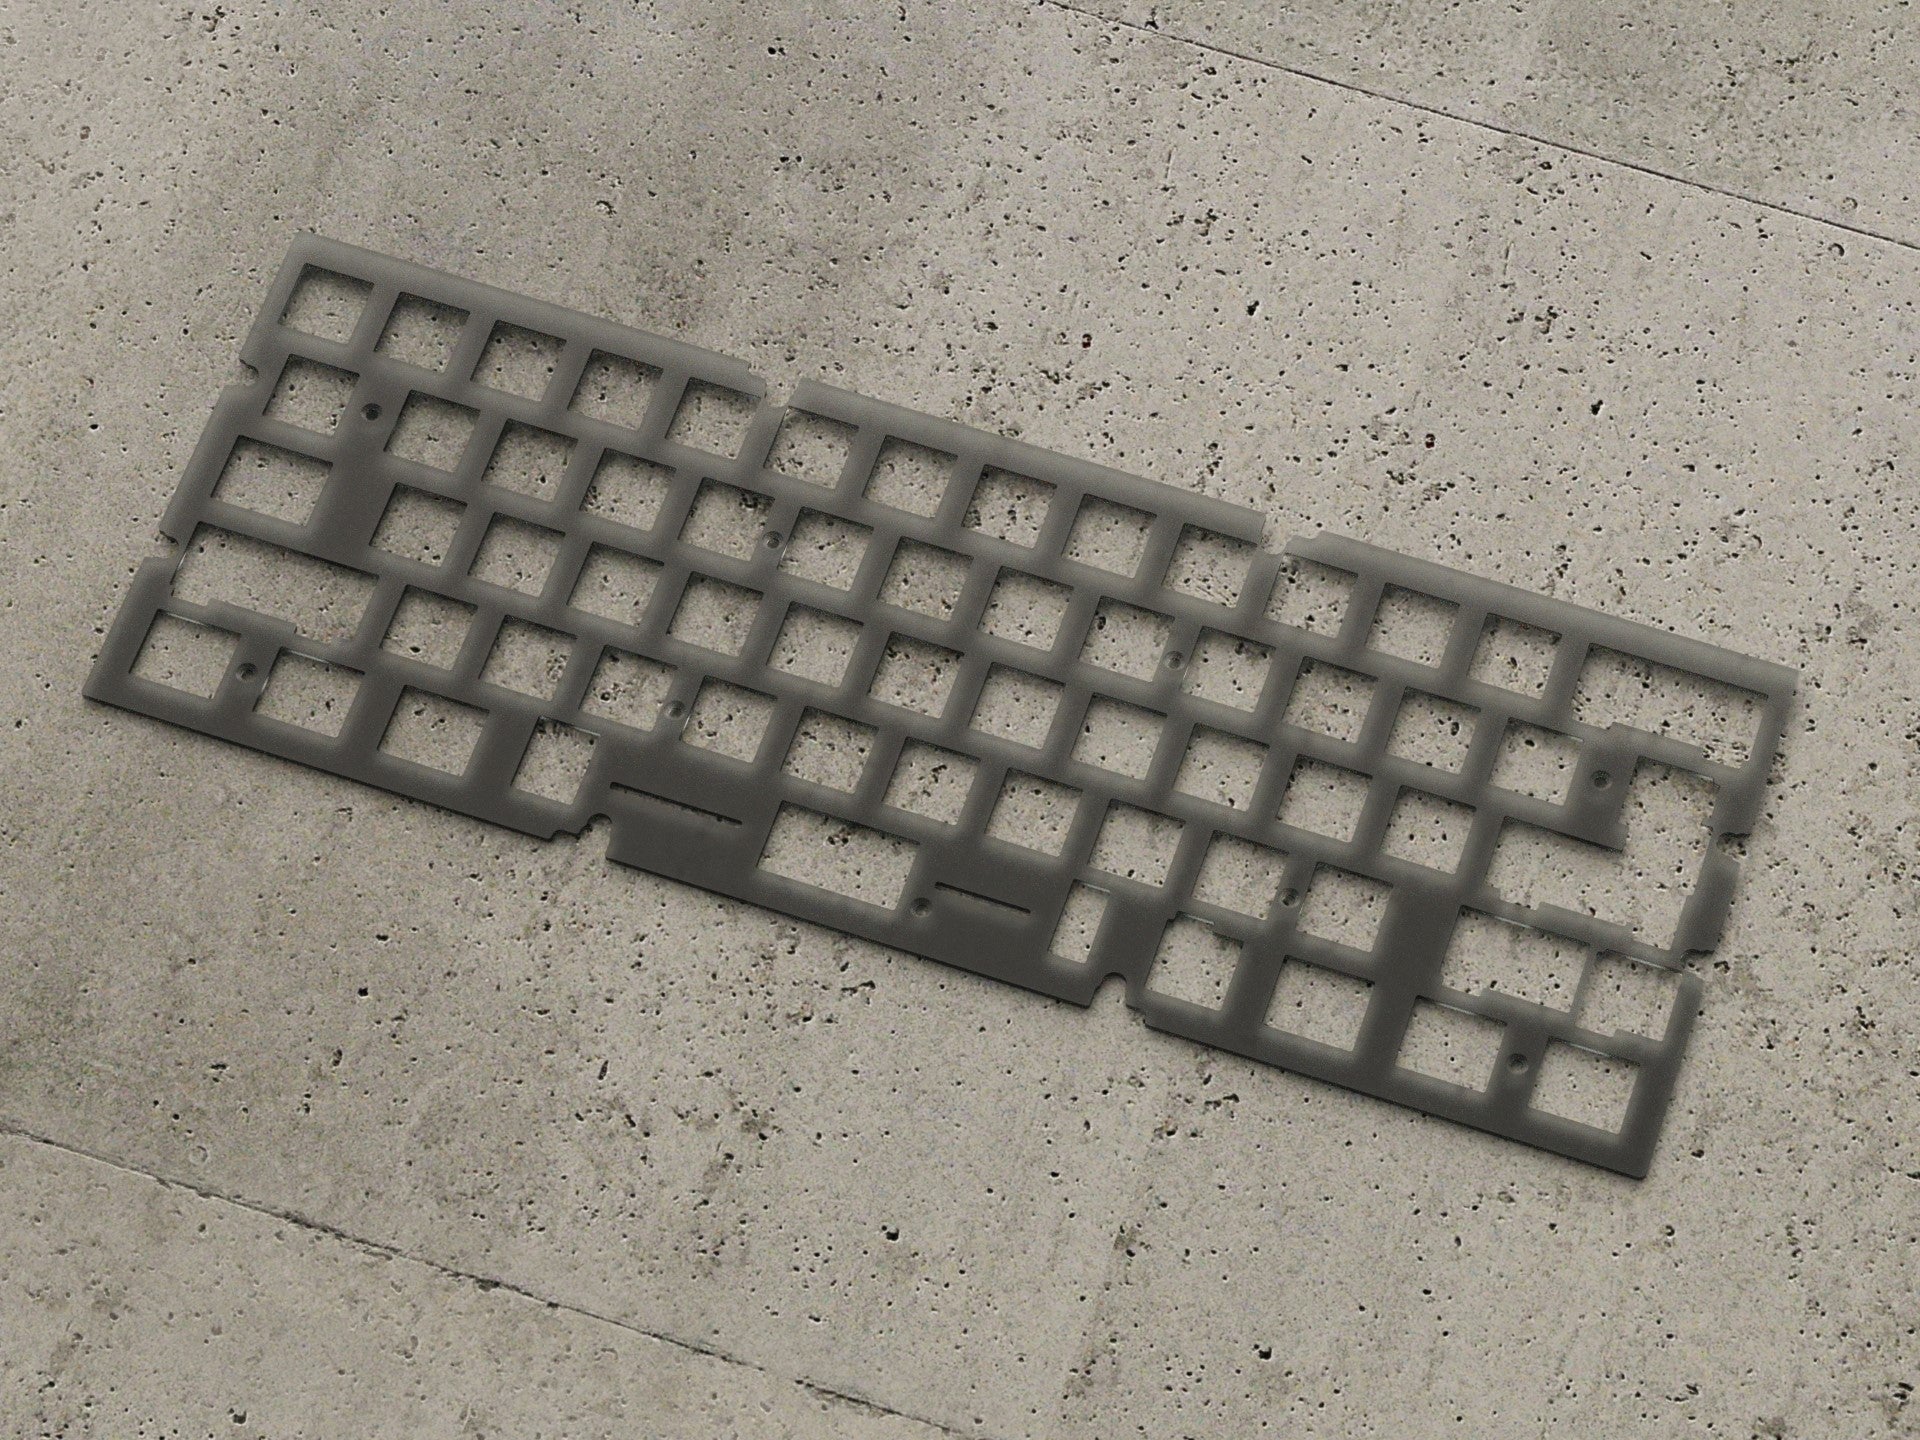 Brutal v2 60% Keyboard - Plate Addons